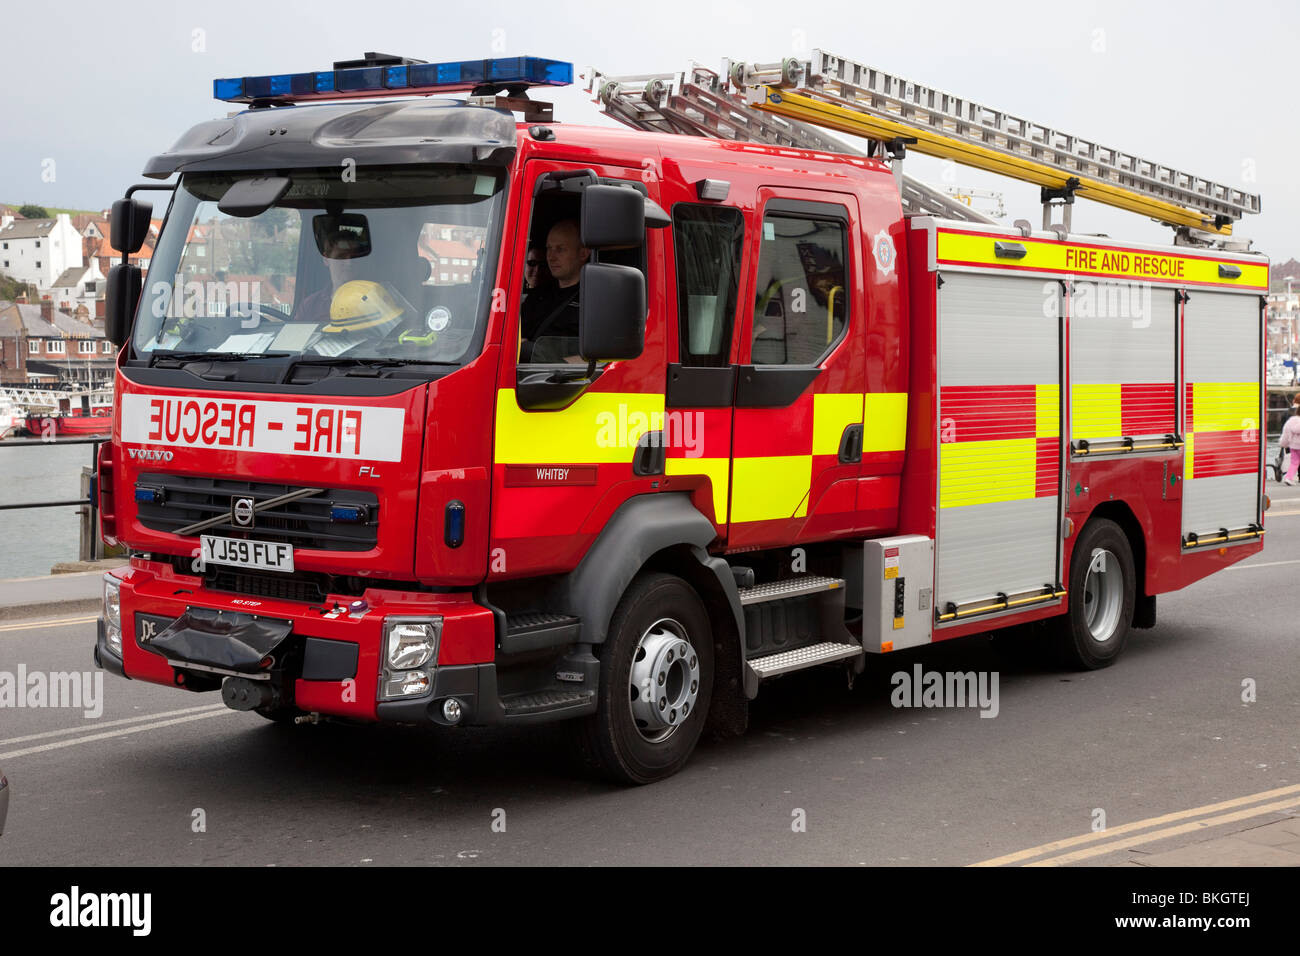 Whitby Fire & Rescue Engine, Red Fire Truck, veicolo antincendio di emergenza, trasporto, attrezzatura, camion da fuoco Volvo nello Yorkshire, Regno Unito Foto Stock